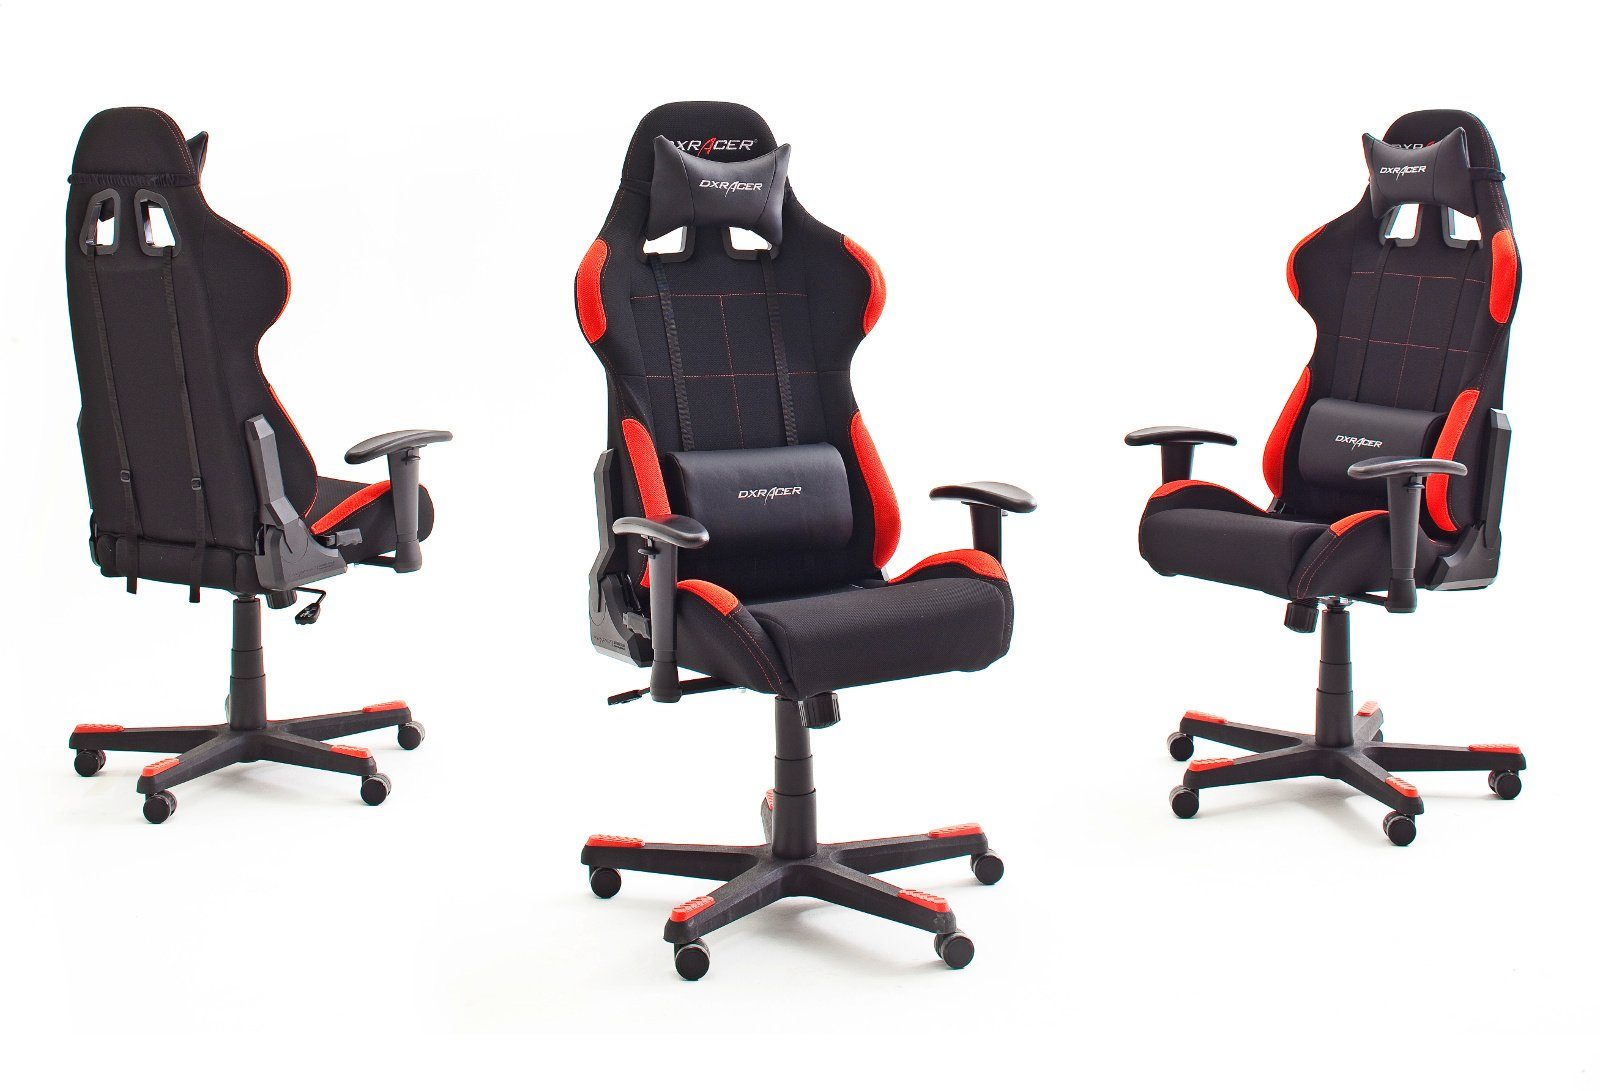 und Gaming Chair schwarz MCA (Chefsessel furniture rot) FD01-NR in DXRacer